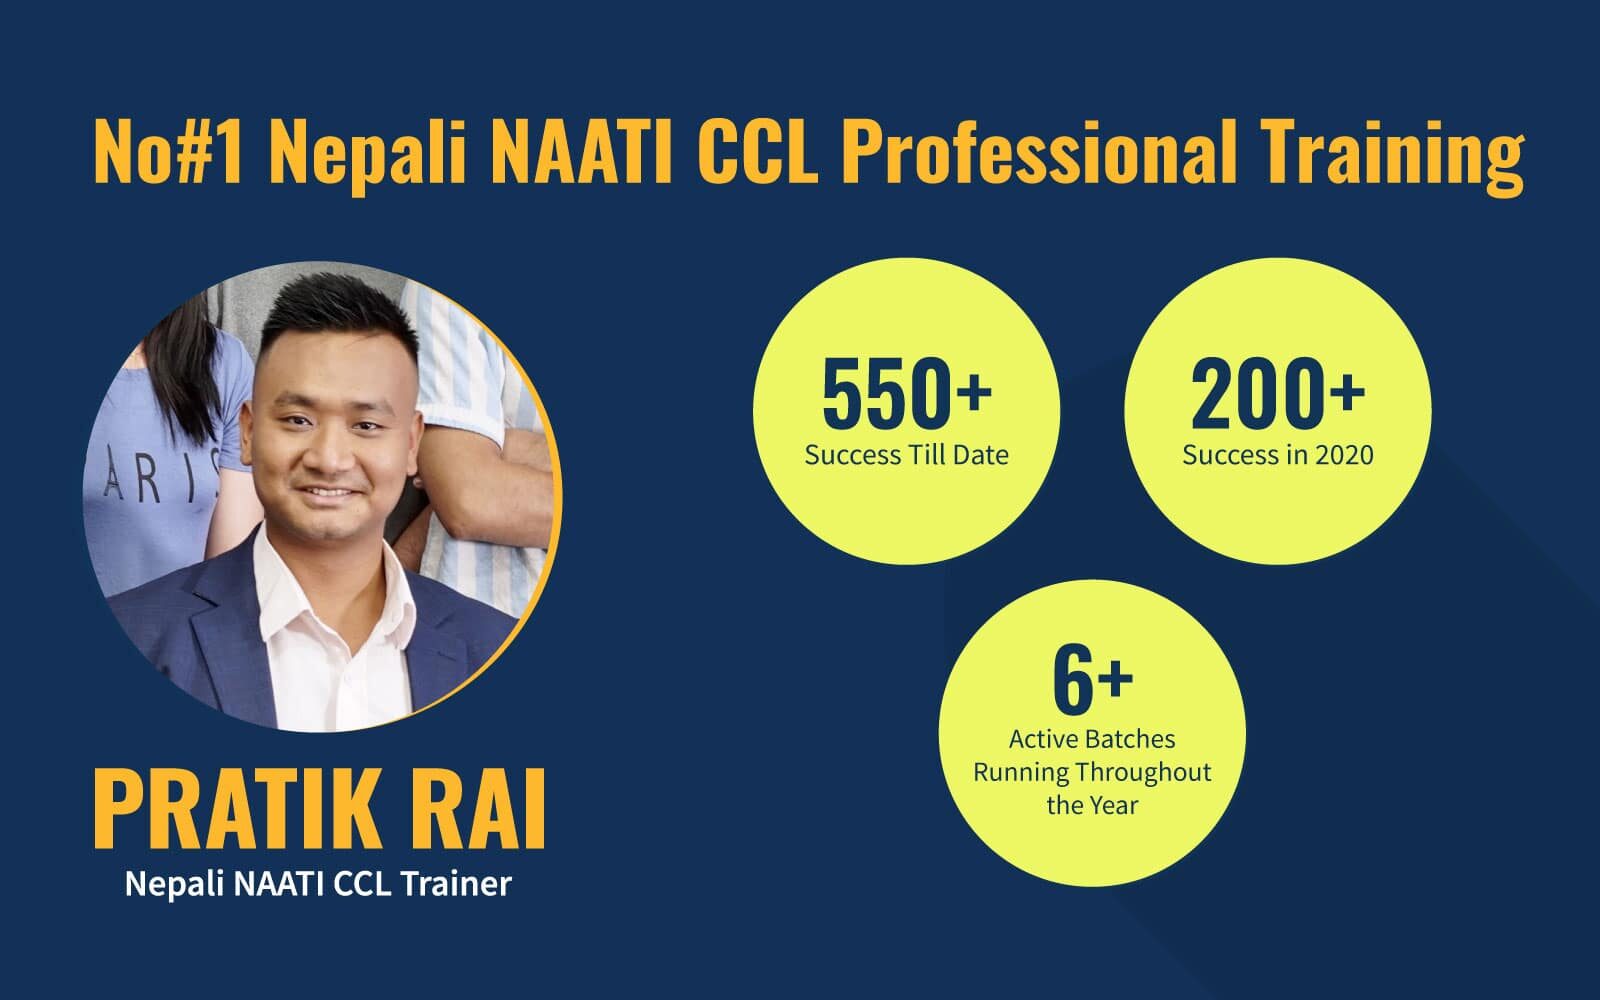 No. 1 Nepali NAATI CCL Training Centre in Australia